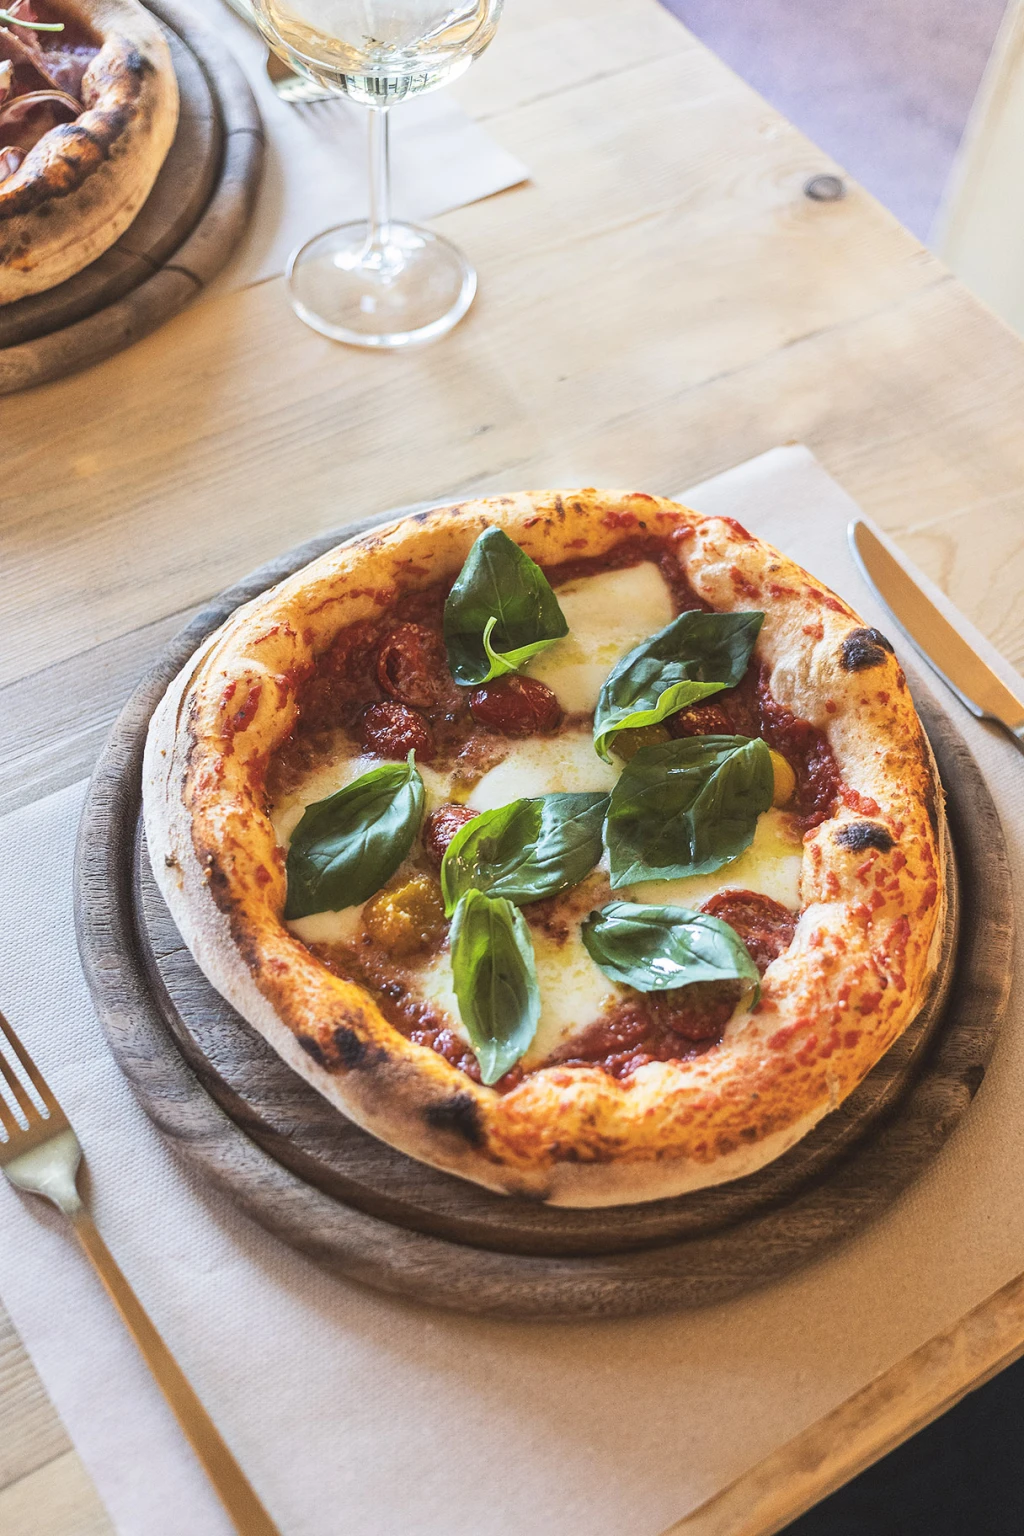 Pizza Dipinta [@pizza_dipinta] bergamo, Italy